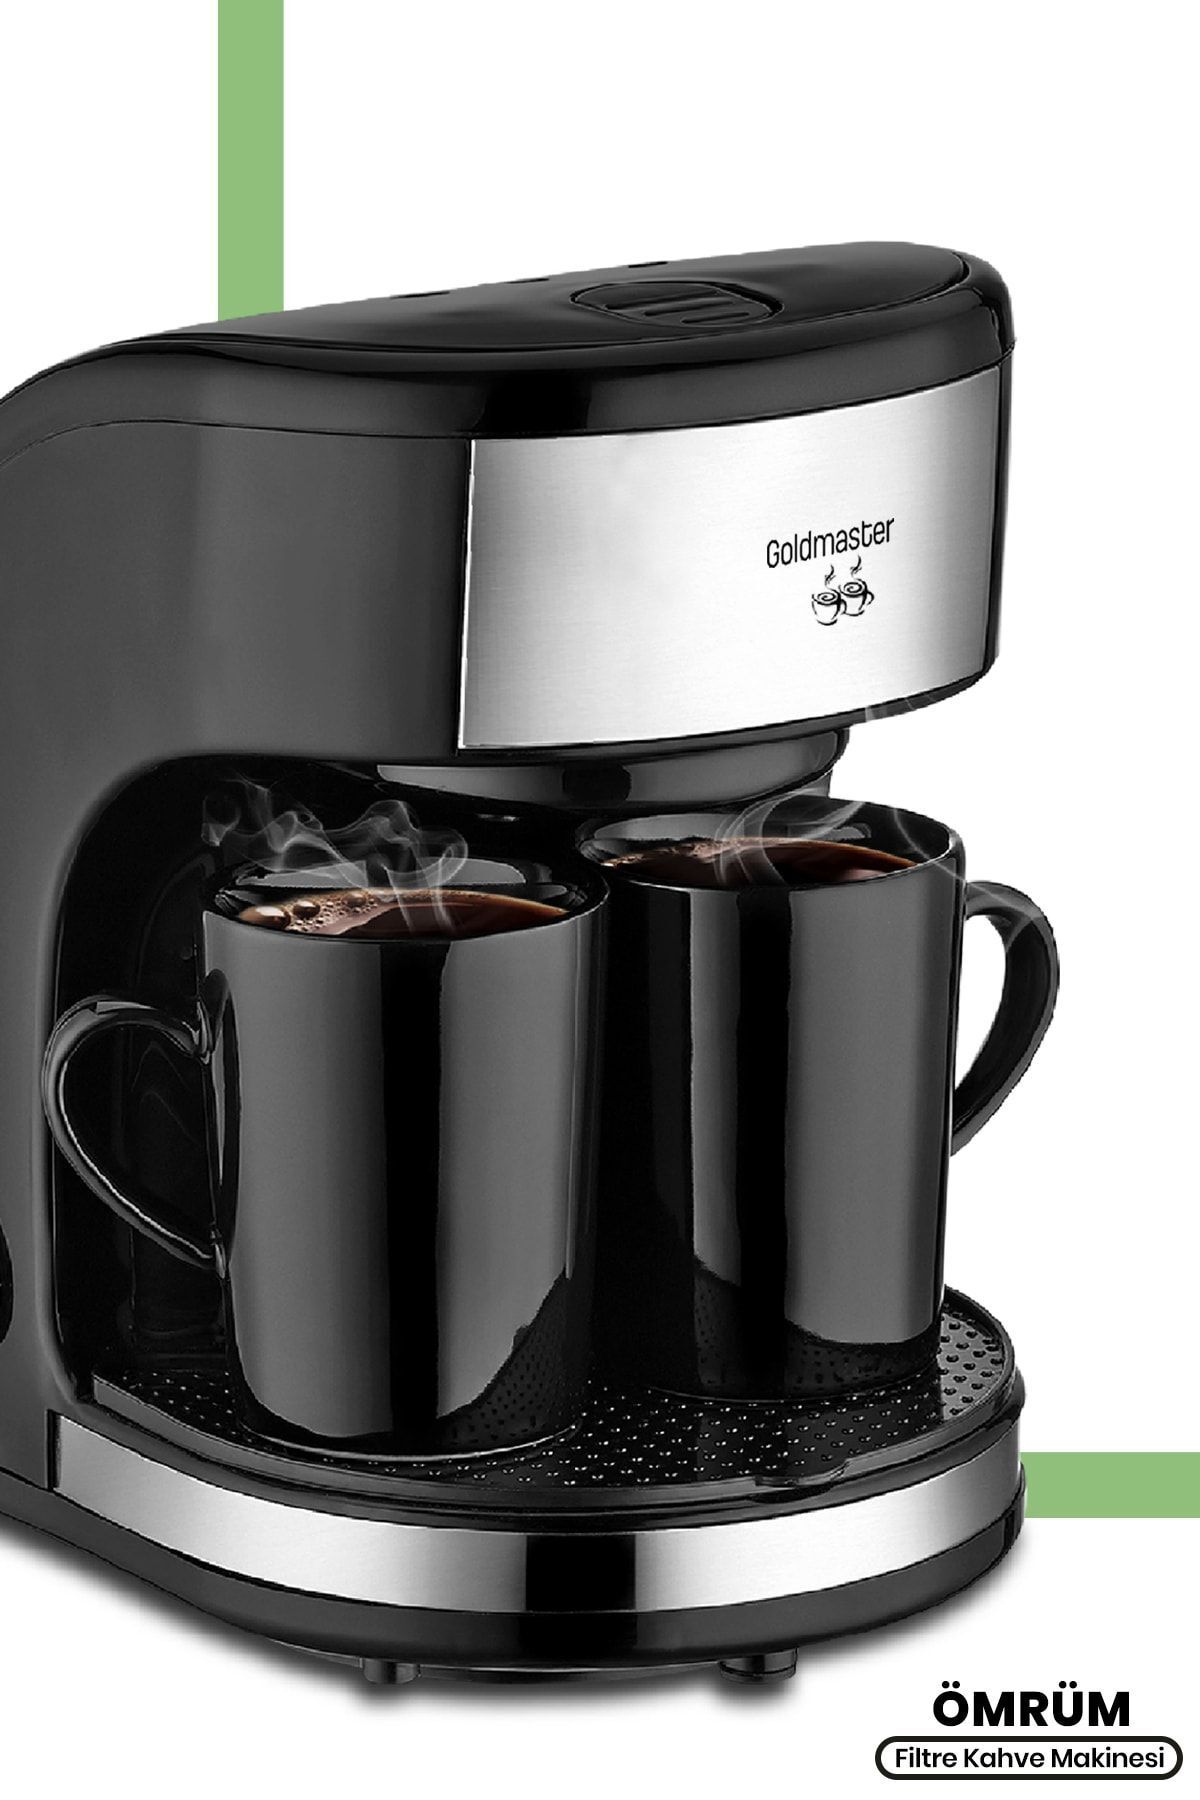 GoldMaster Ömrüm Yıkanabilir Filtreli Çift Kupalı Özel Demlemeli Filtre Kahve Makinesi